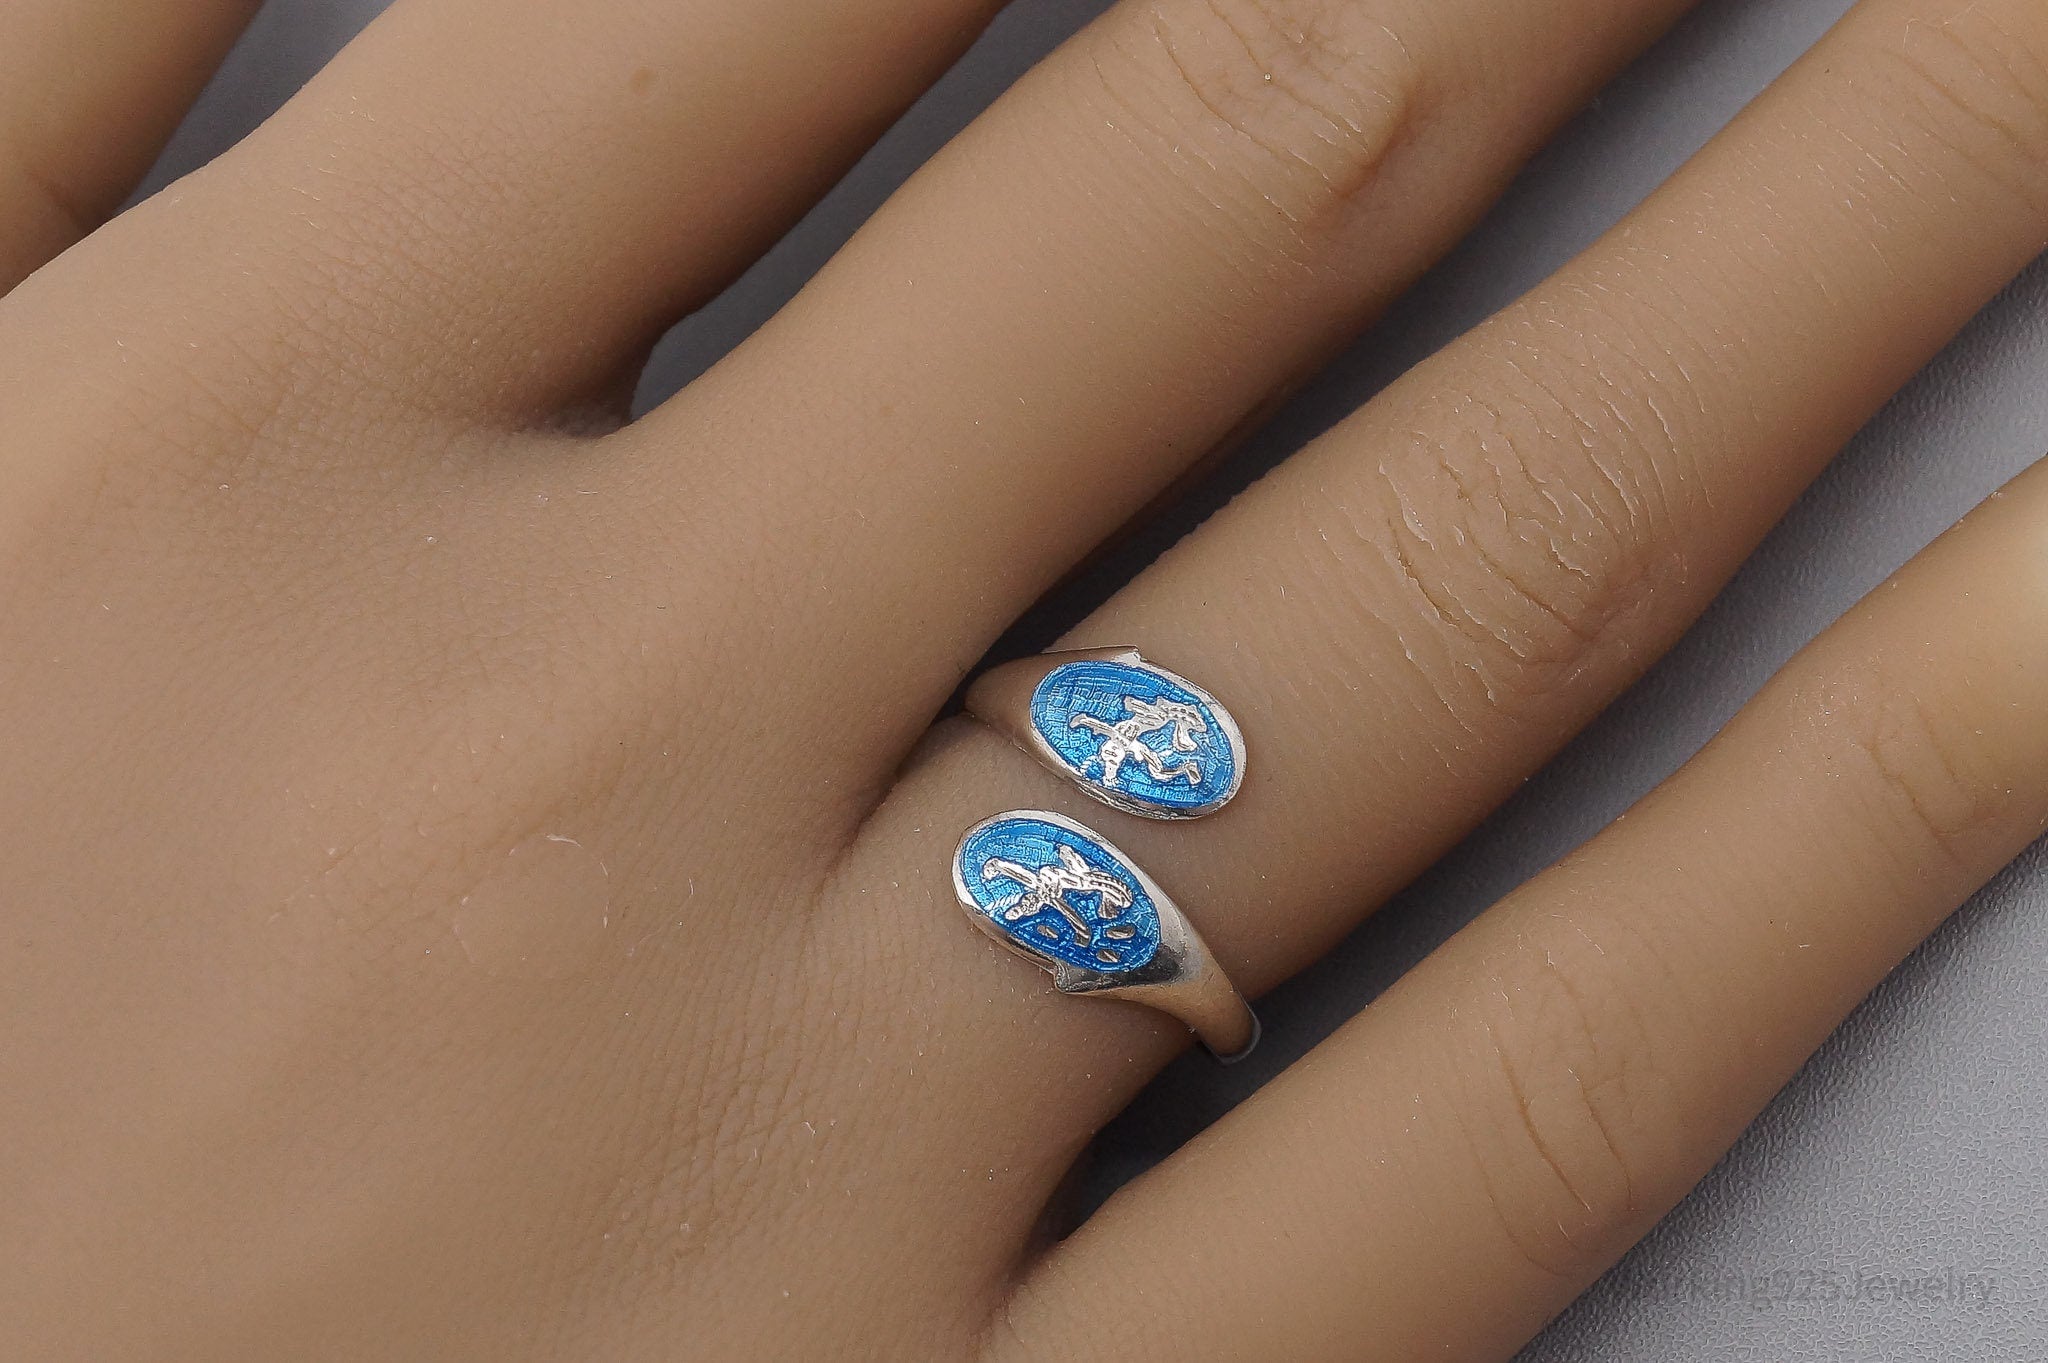 Vintage Blue Enamel Dancers Sterling Silver Wrap Ring - Size 7.25 Adjustable